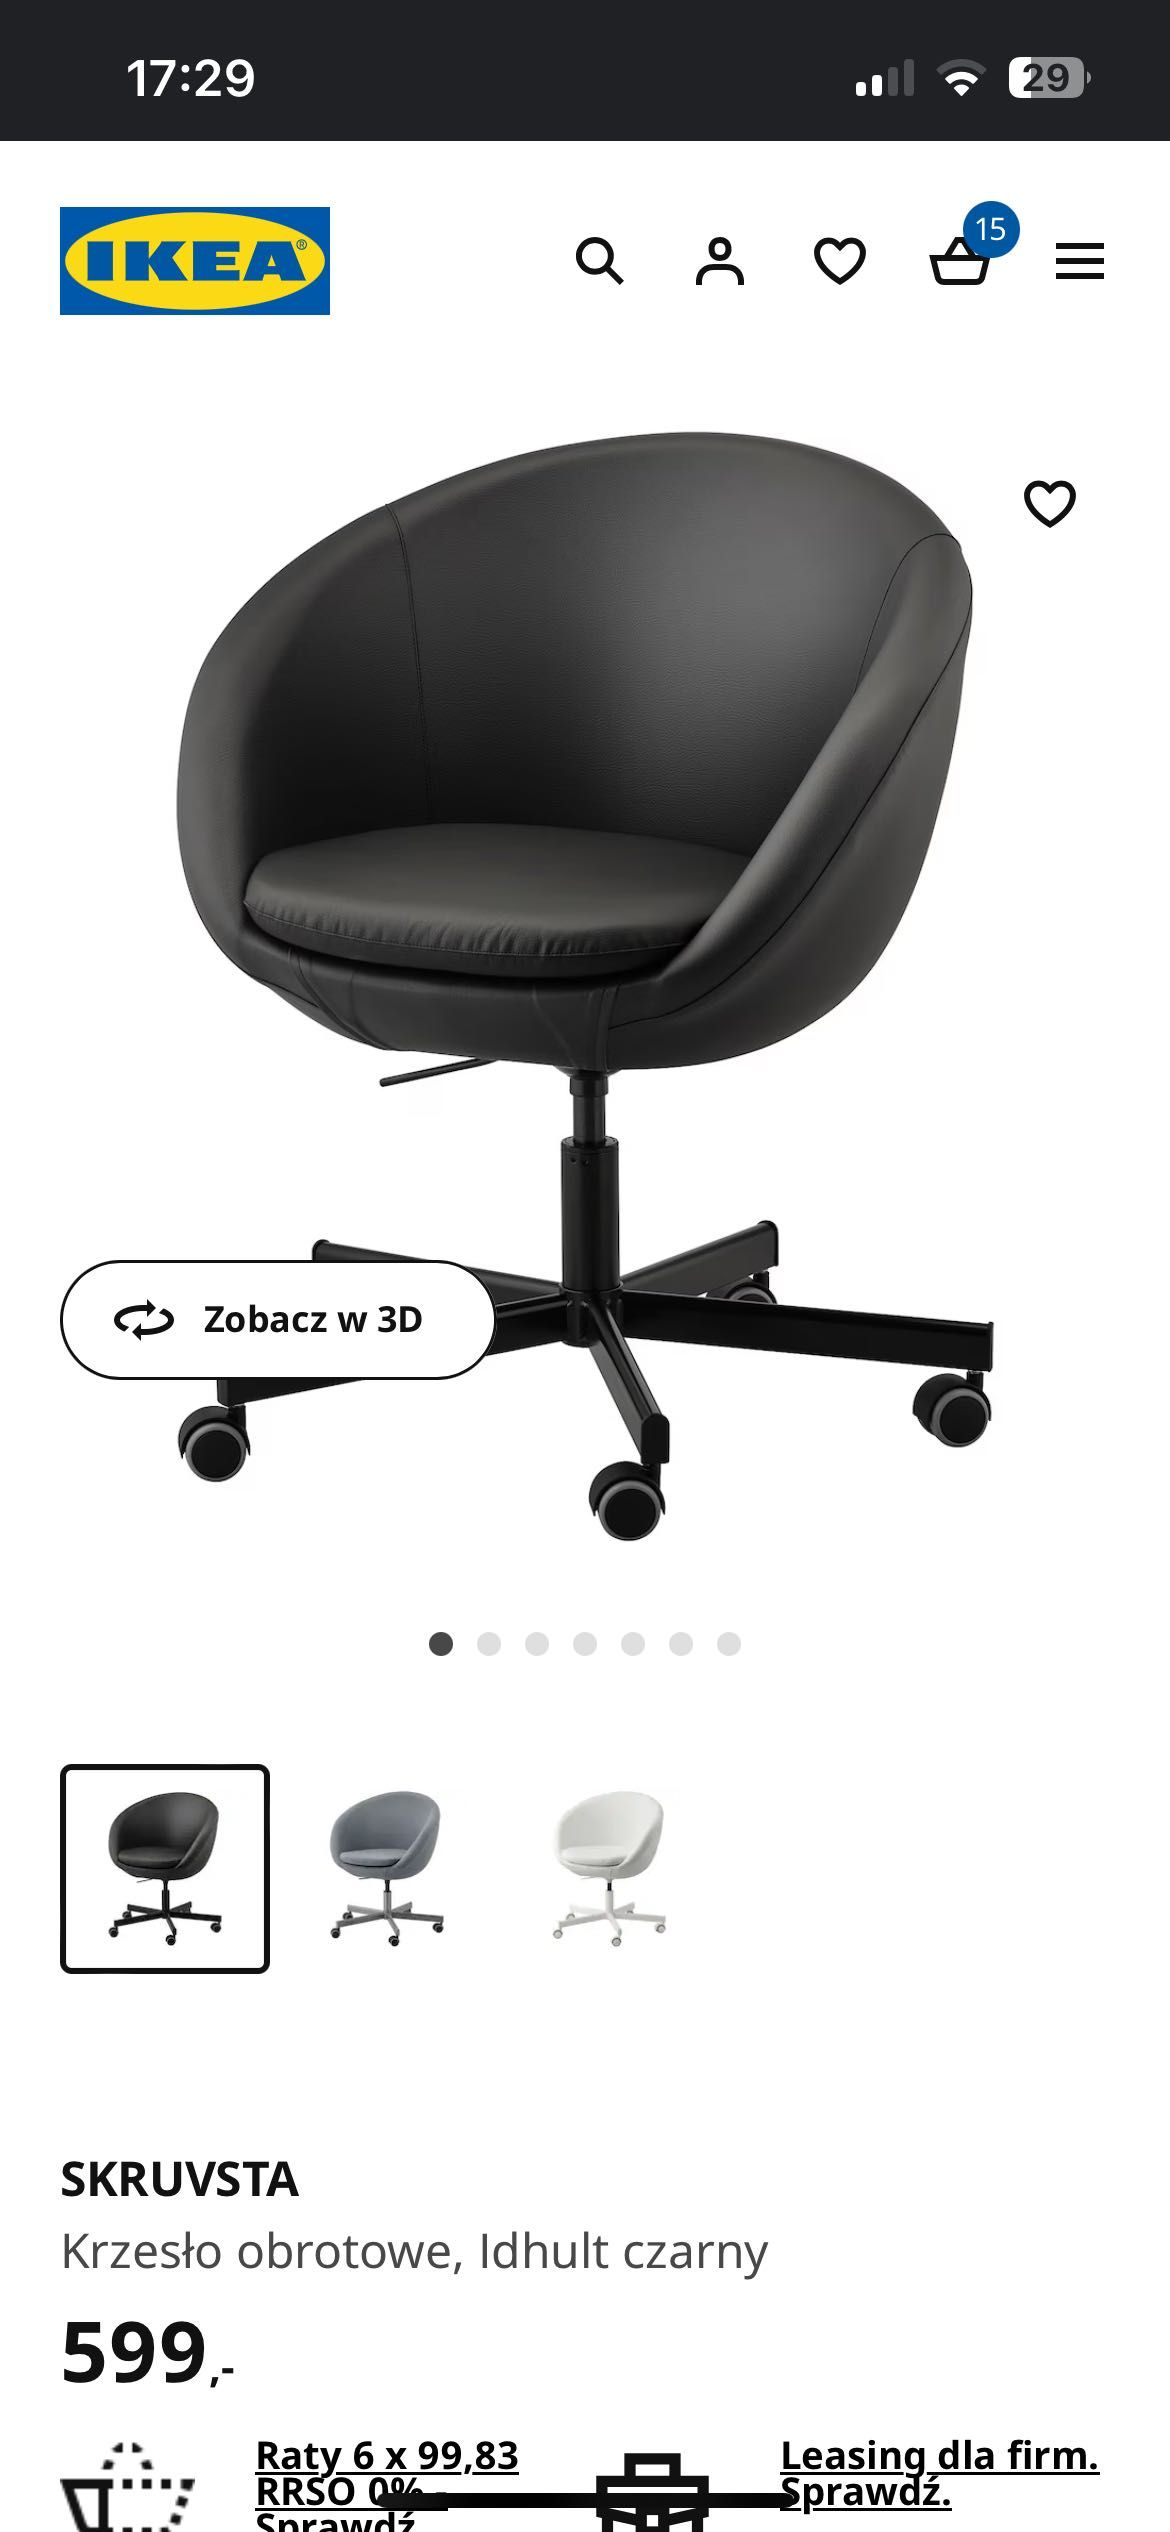 Krzesło obrotowe Ikea Skruvsta